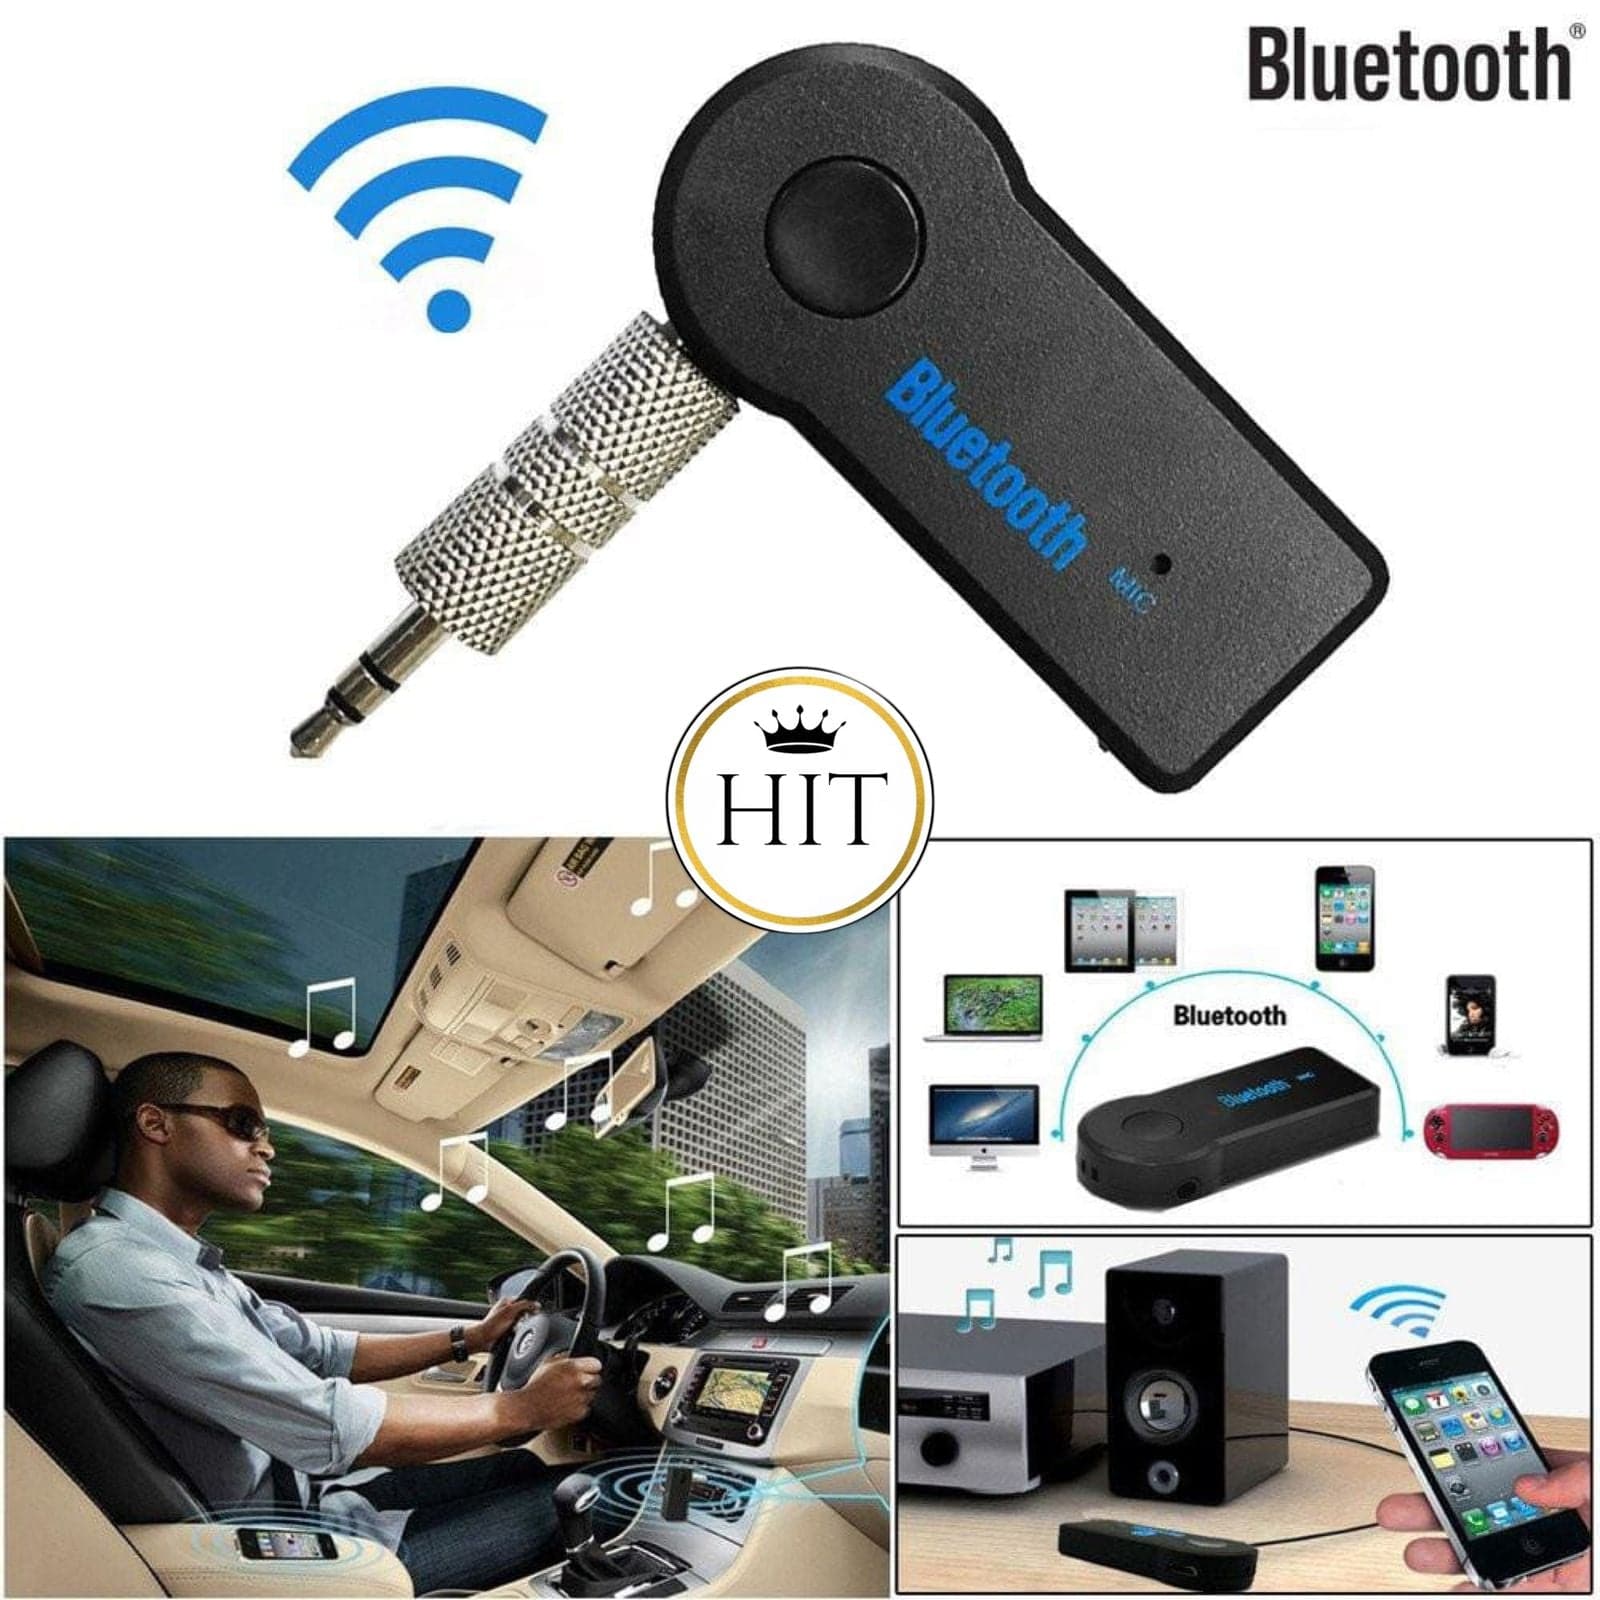 ▷Adaptador Bluetooth Bt310 Manos Libres 3.5mmPago contra entrega Crédito  con Addi – colombiahit